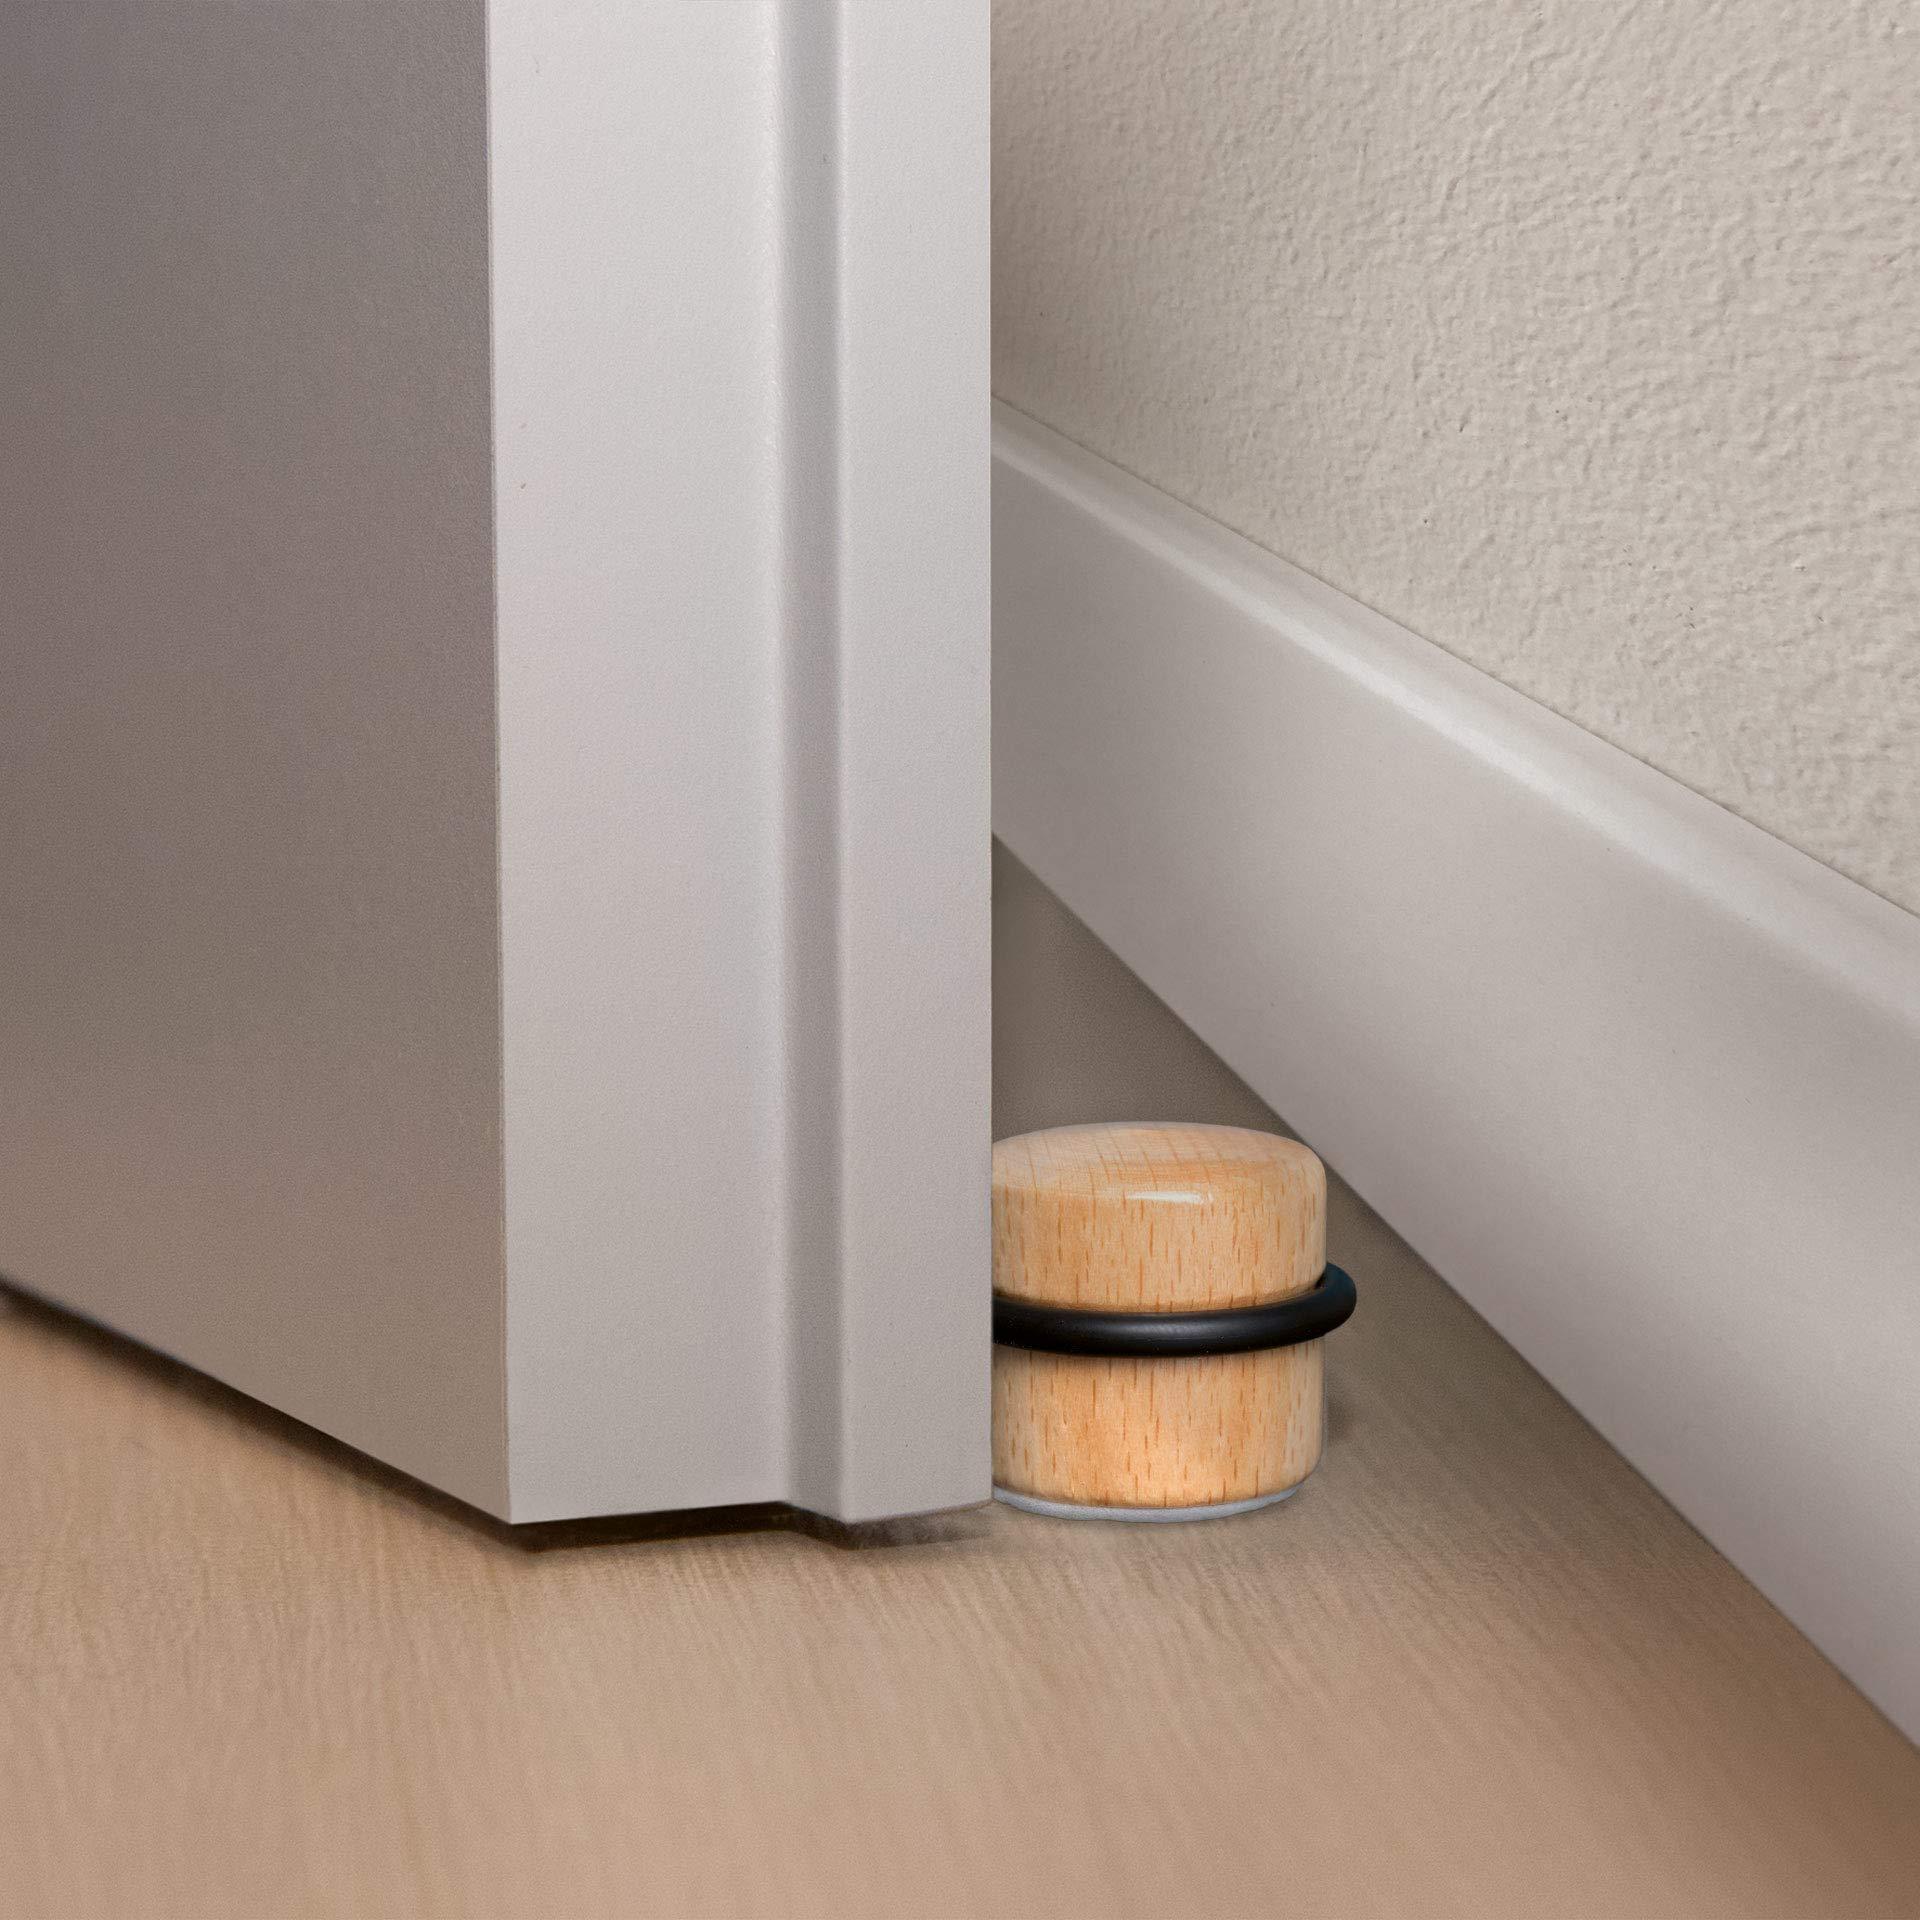 LouMaxx Türstopper Boden selbstklebend Holz, 2er Set - Türstopper Boden - Türstopper zum kleben - Türstopper Boden - Buche–Optik